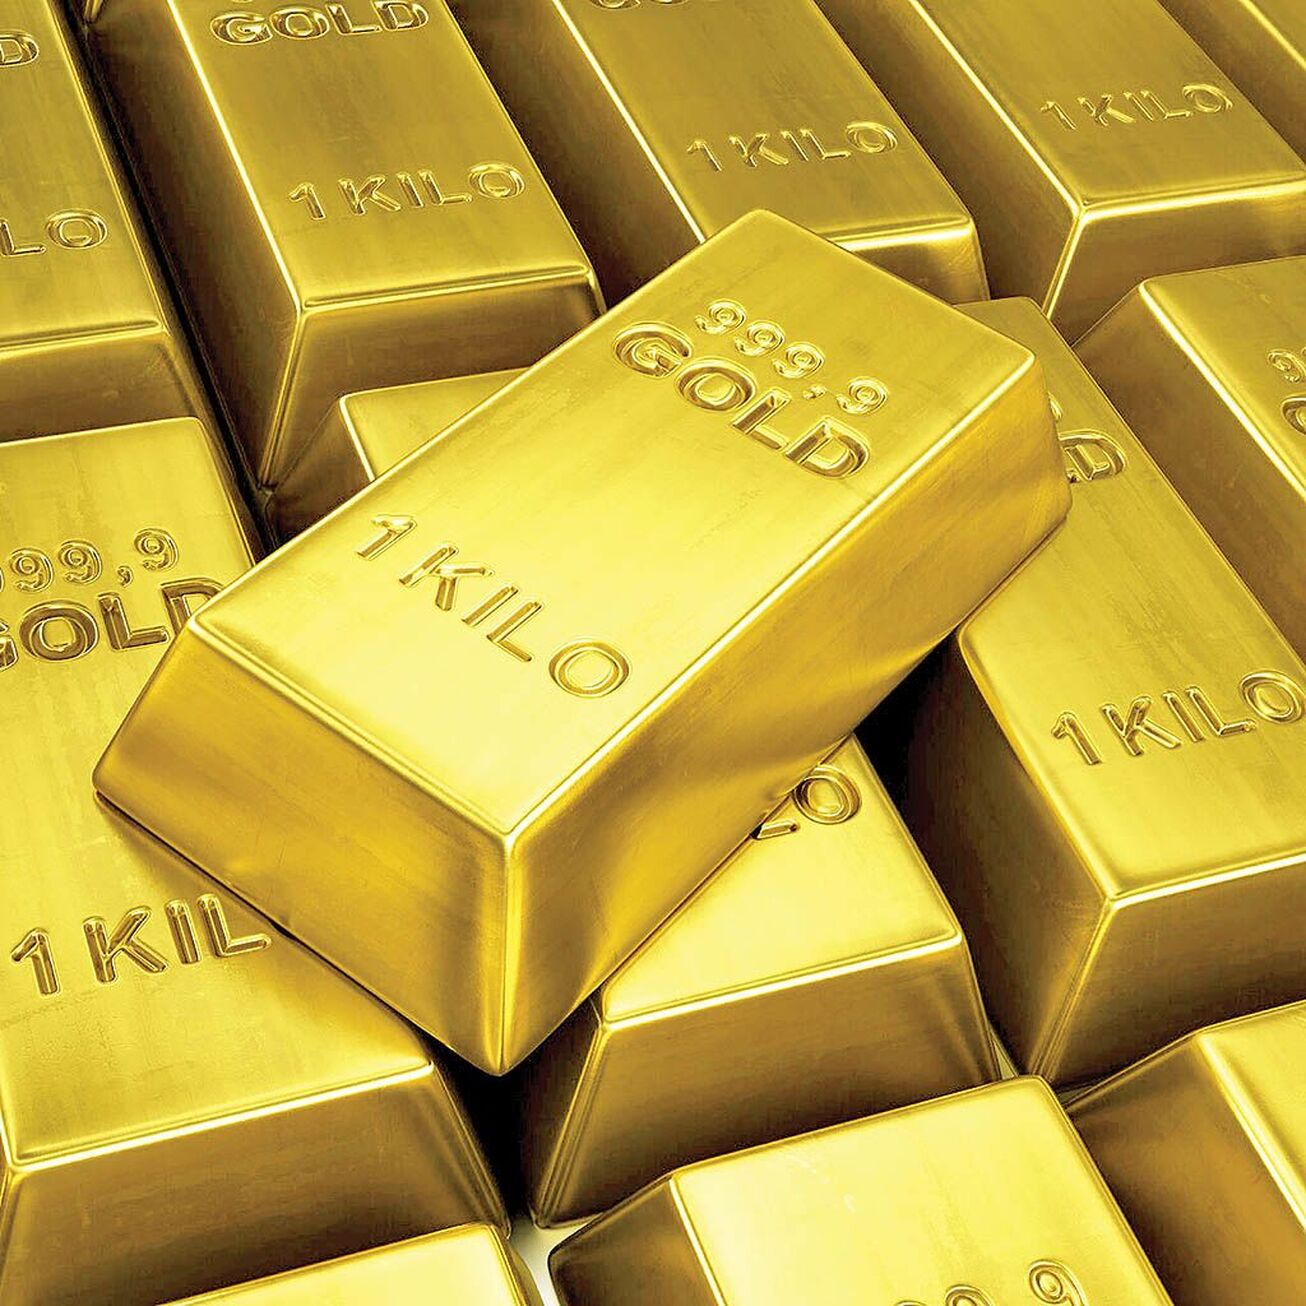 افزایش قیمت طلا و کاهش ارزش دلار